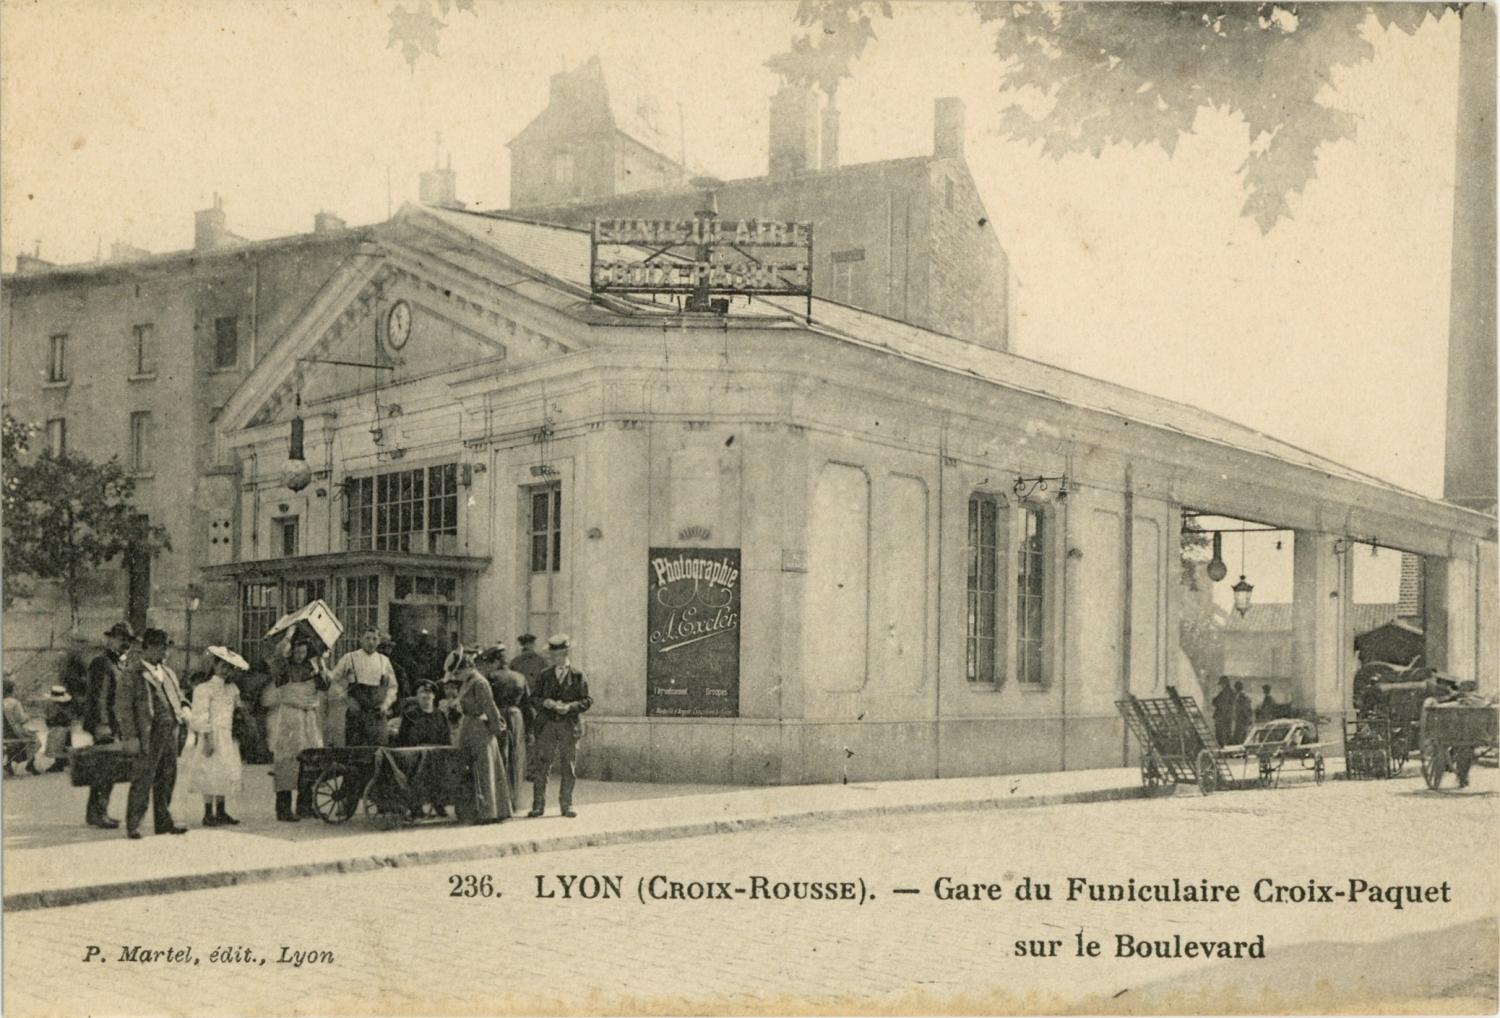 Lyon (Croix-Rousse) : Gare du Funiculaire Croix-Paquet sur le Boulevard.